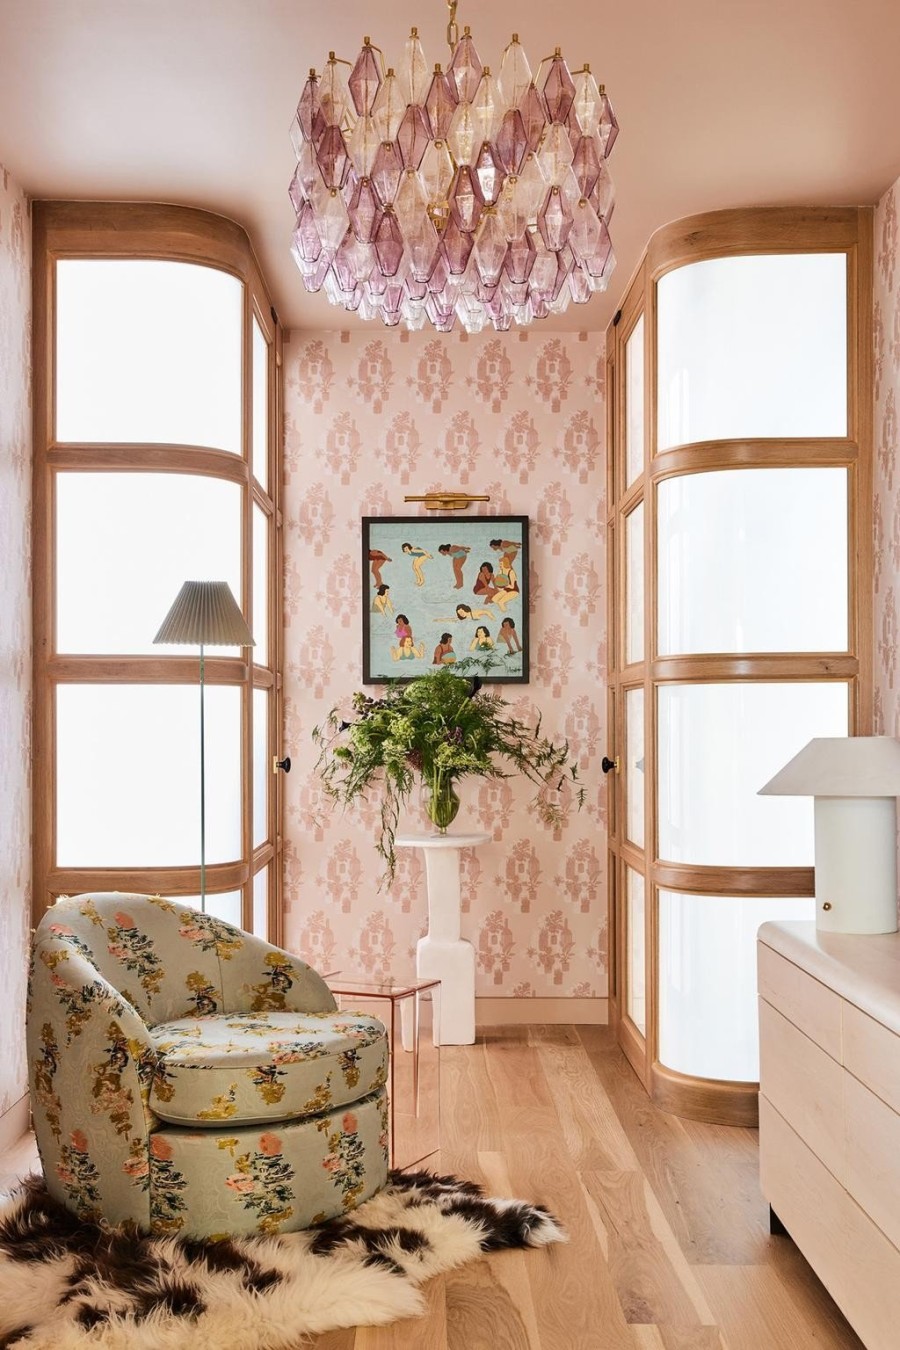 Αυτή η μοντέρνα κατοικία στο Chelsea αποδεικνύει ότι το ροζ χρώμα μπορεί να είναι απόλυτα κομψό - Φωτογραφία 1